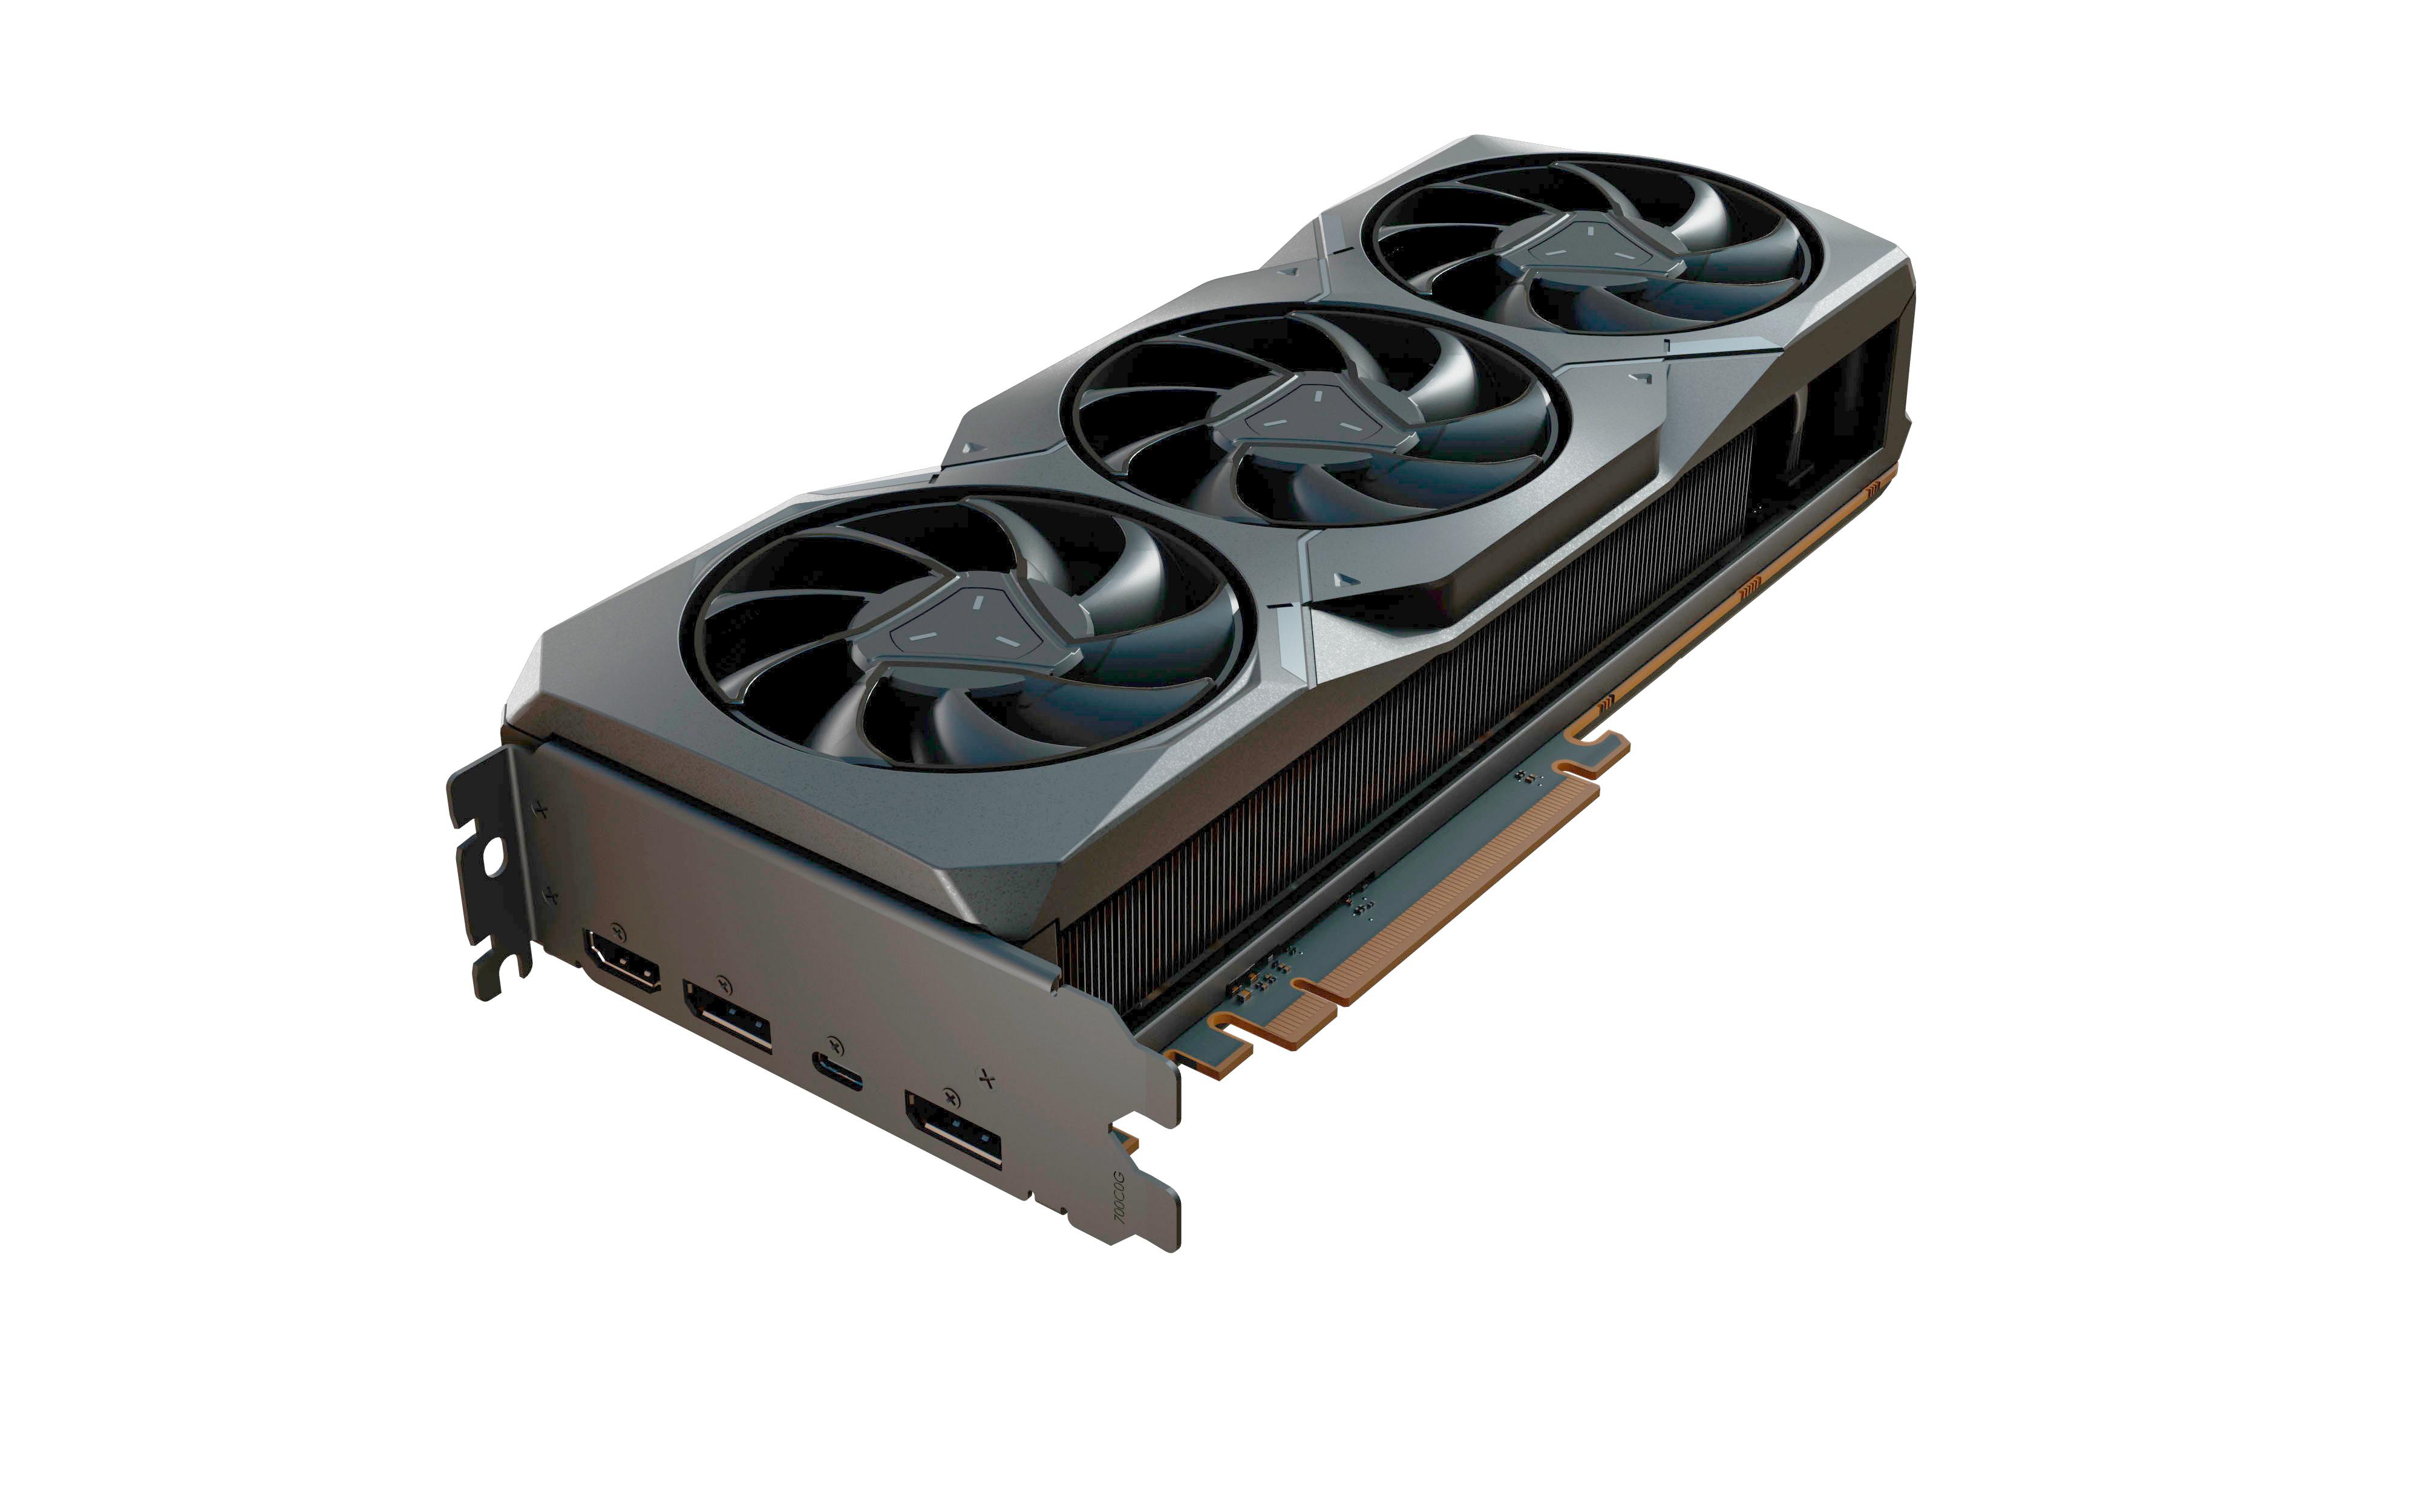 Sapphire RX 7900 XT 21323-01-20G AMD GPU Processor